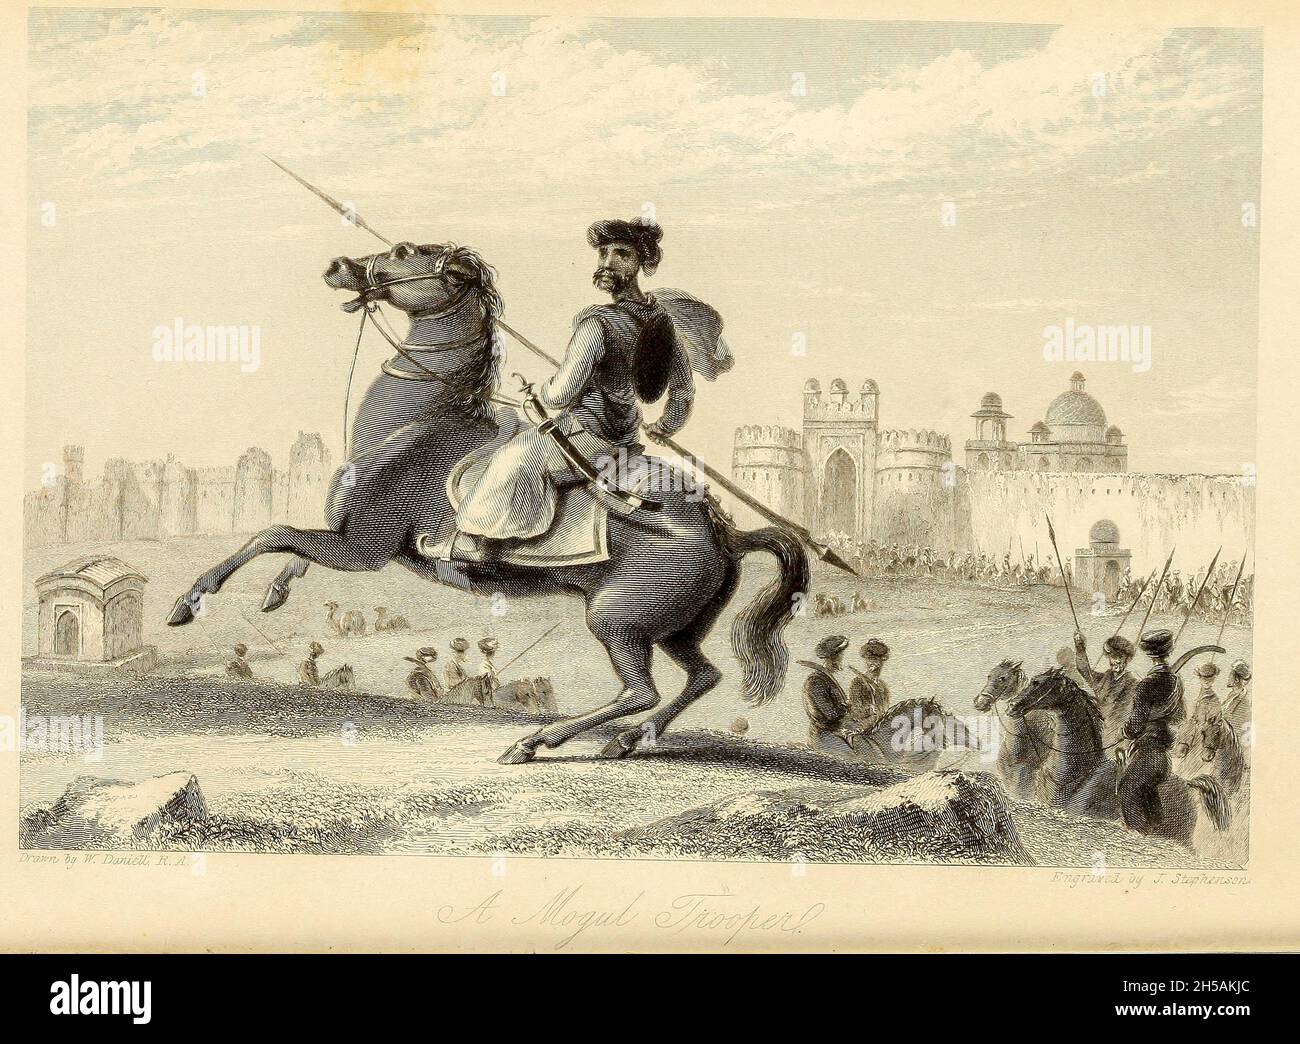 Ein MOGUL-TROOPER zu Pferd aus dem Buch "The Oriental Annual, or, Lives of the Moghul Emperors" von Rev. Hobart Caunter Herausgegeben von Edward Bull, London 1837 Stiche nach Zeichnungen von William Daniell Stockfoto